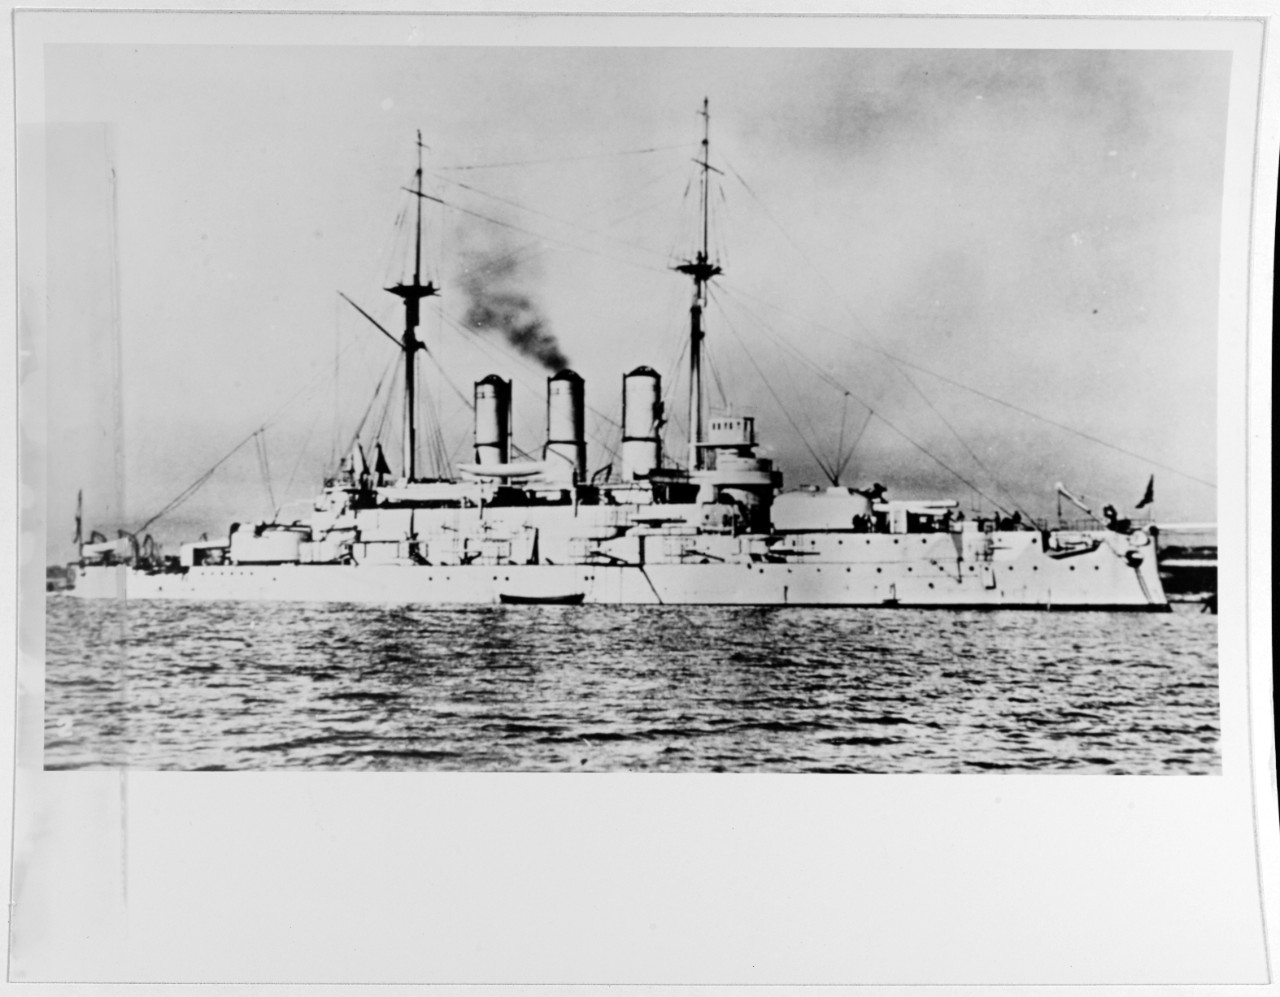 IOANN ZLATOUST (Russian Battleship, 1906-22)